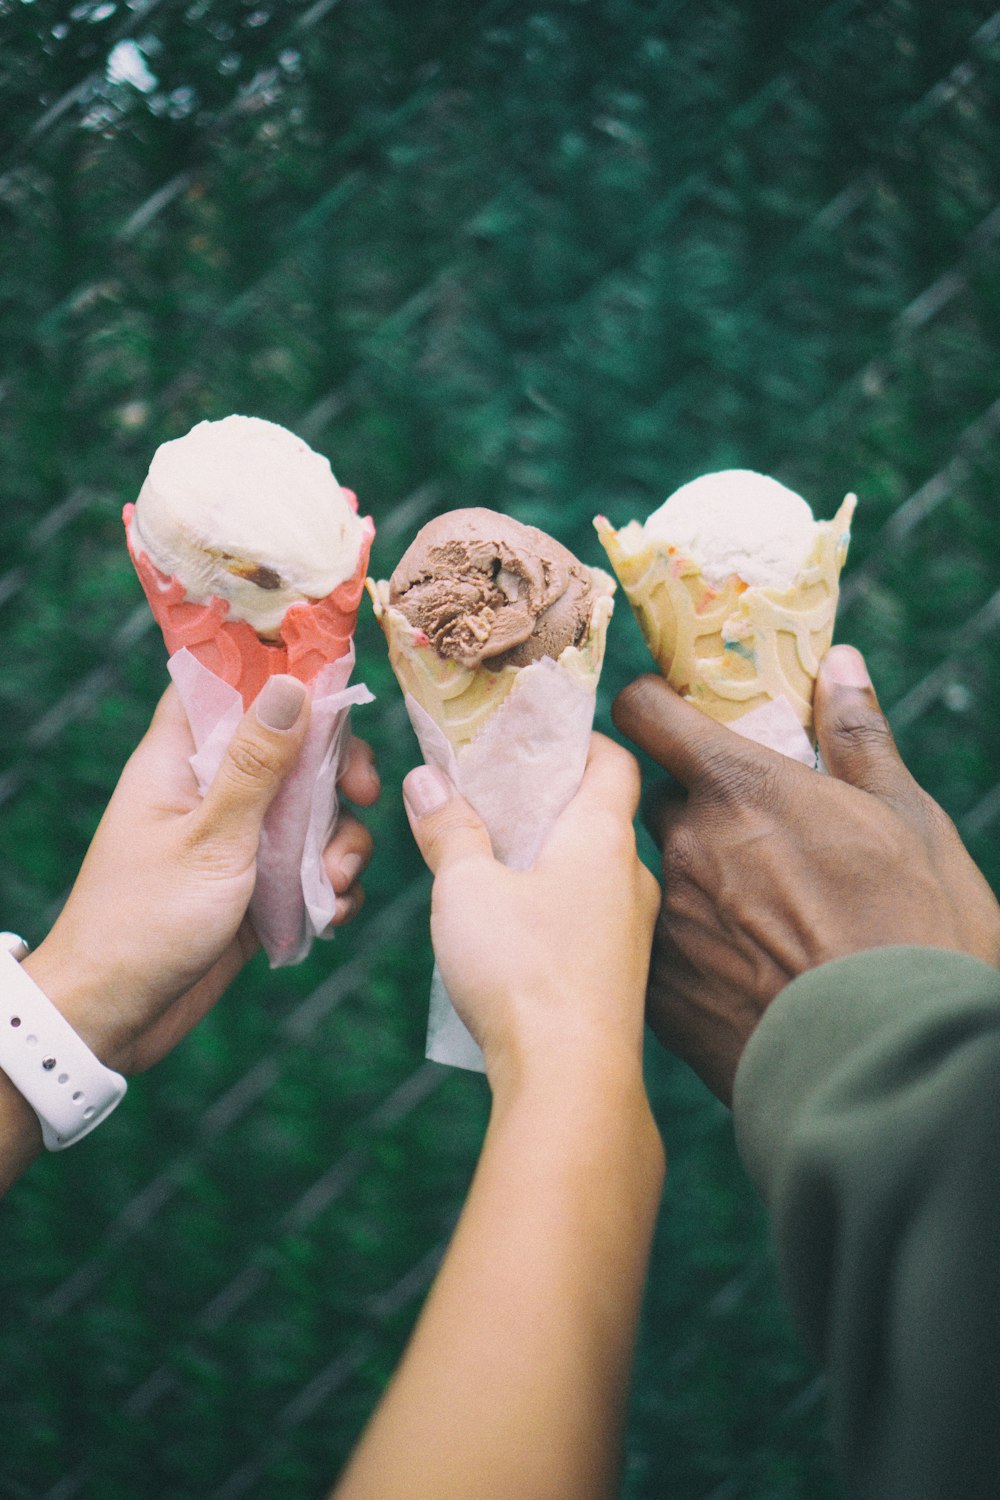 Tres personas sosteniendo conos de helado en sus manos